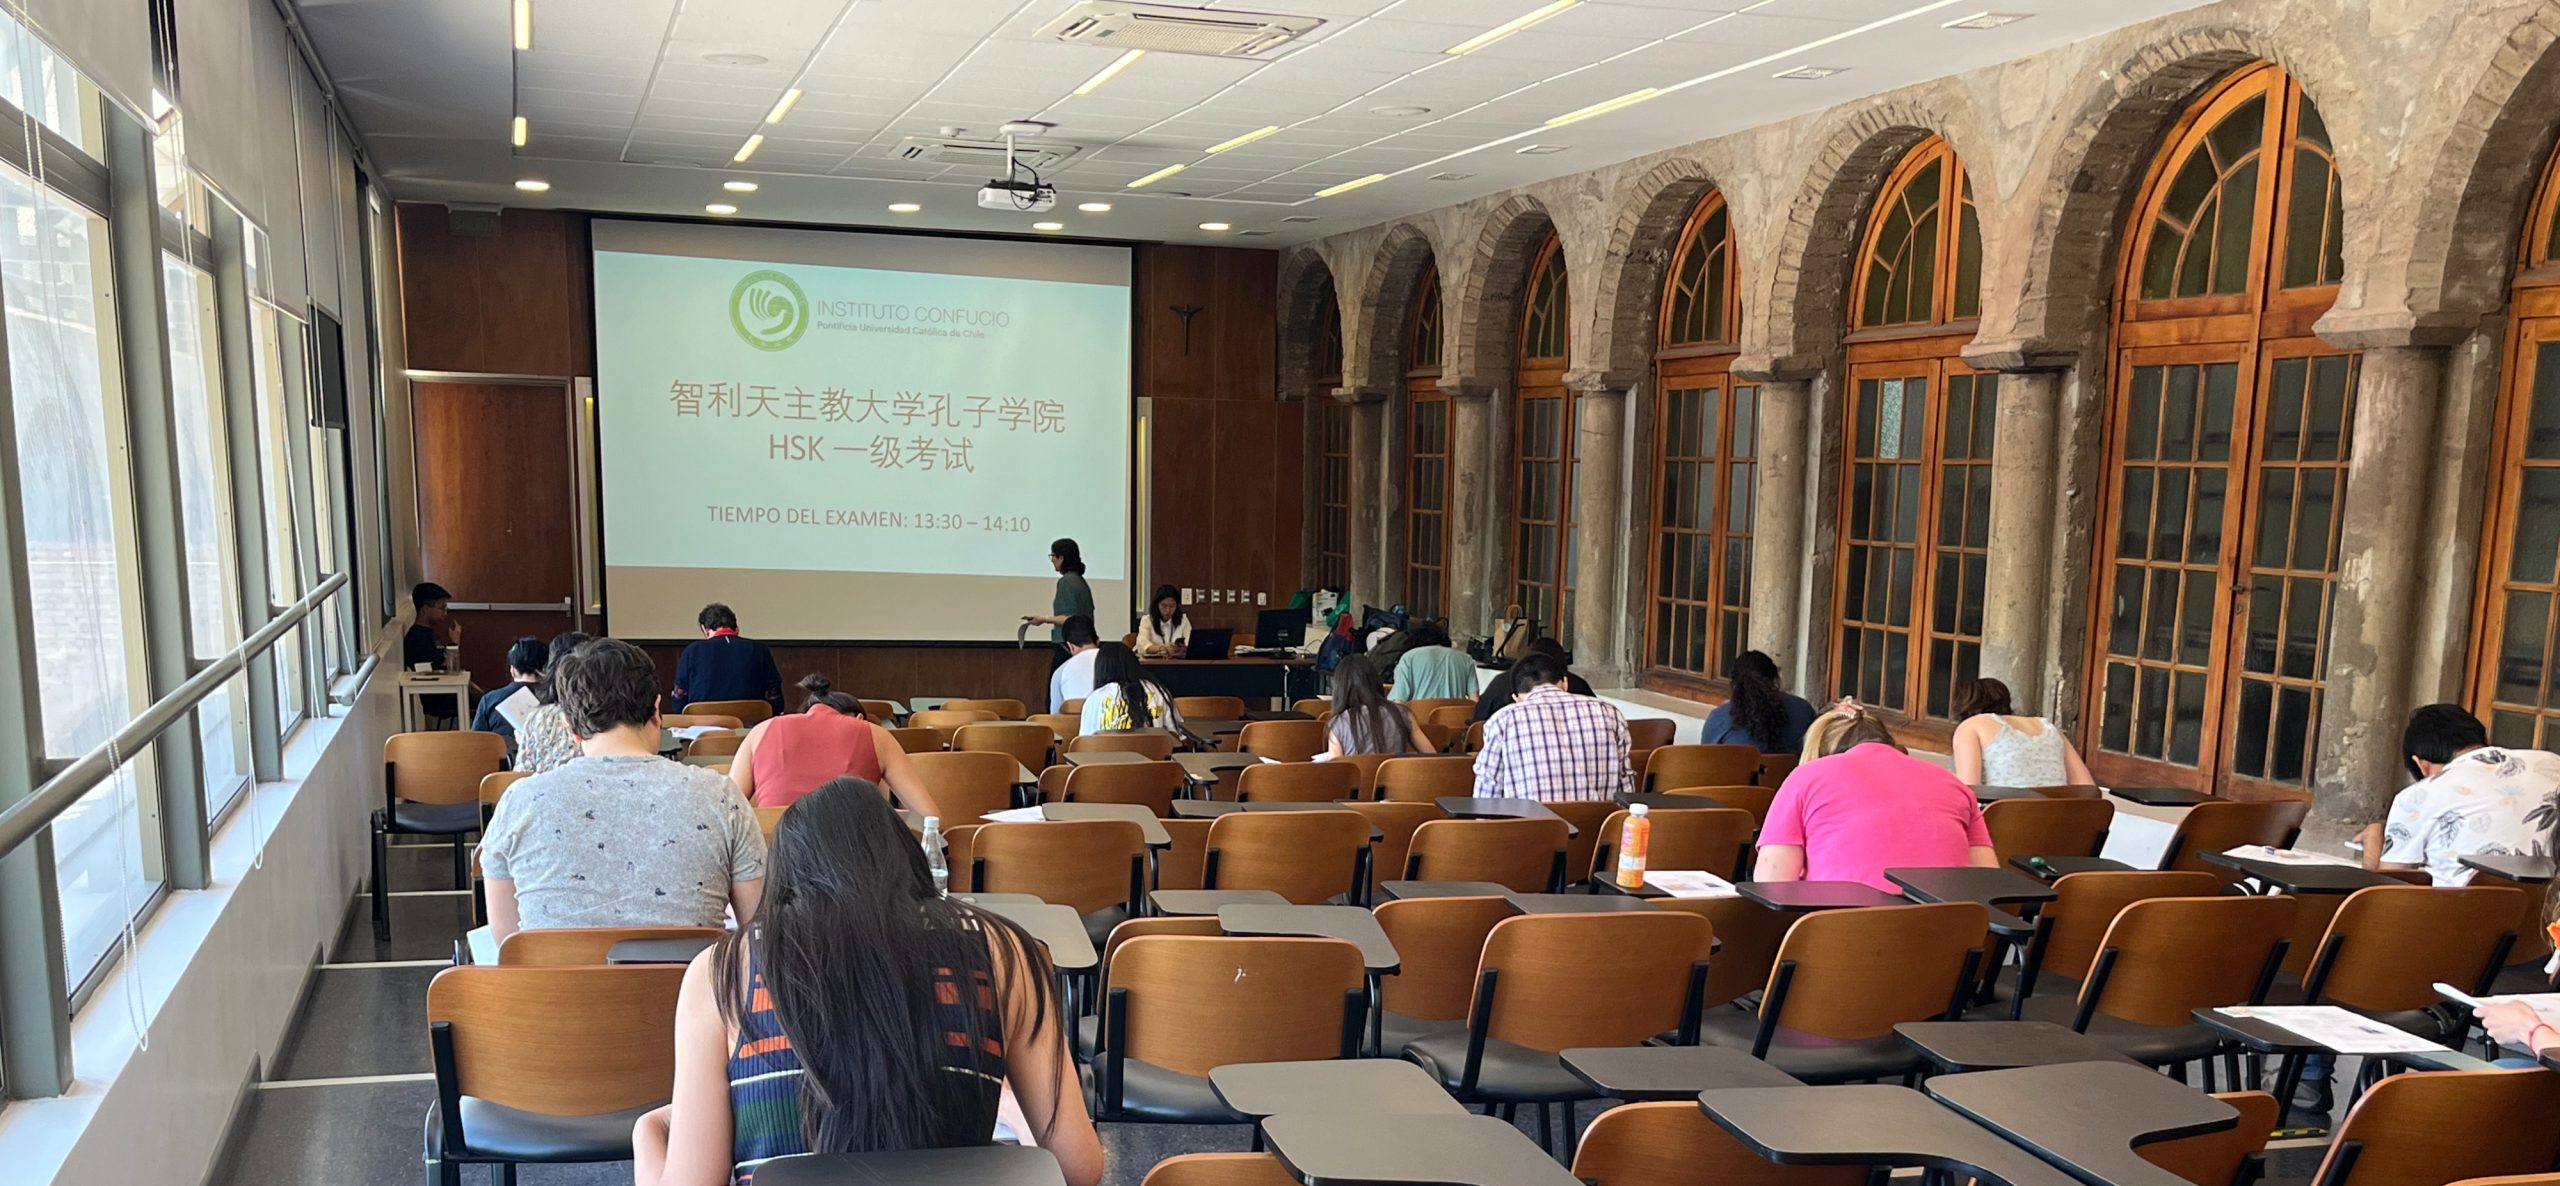 Varios alumnos rindiendo el examen de chino HSK en una sala grande, al fondo la pizarra exhibe la información.